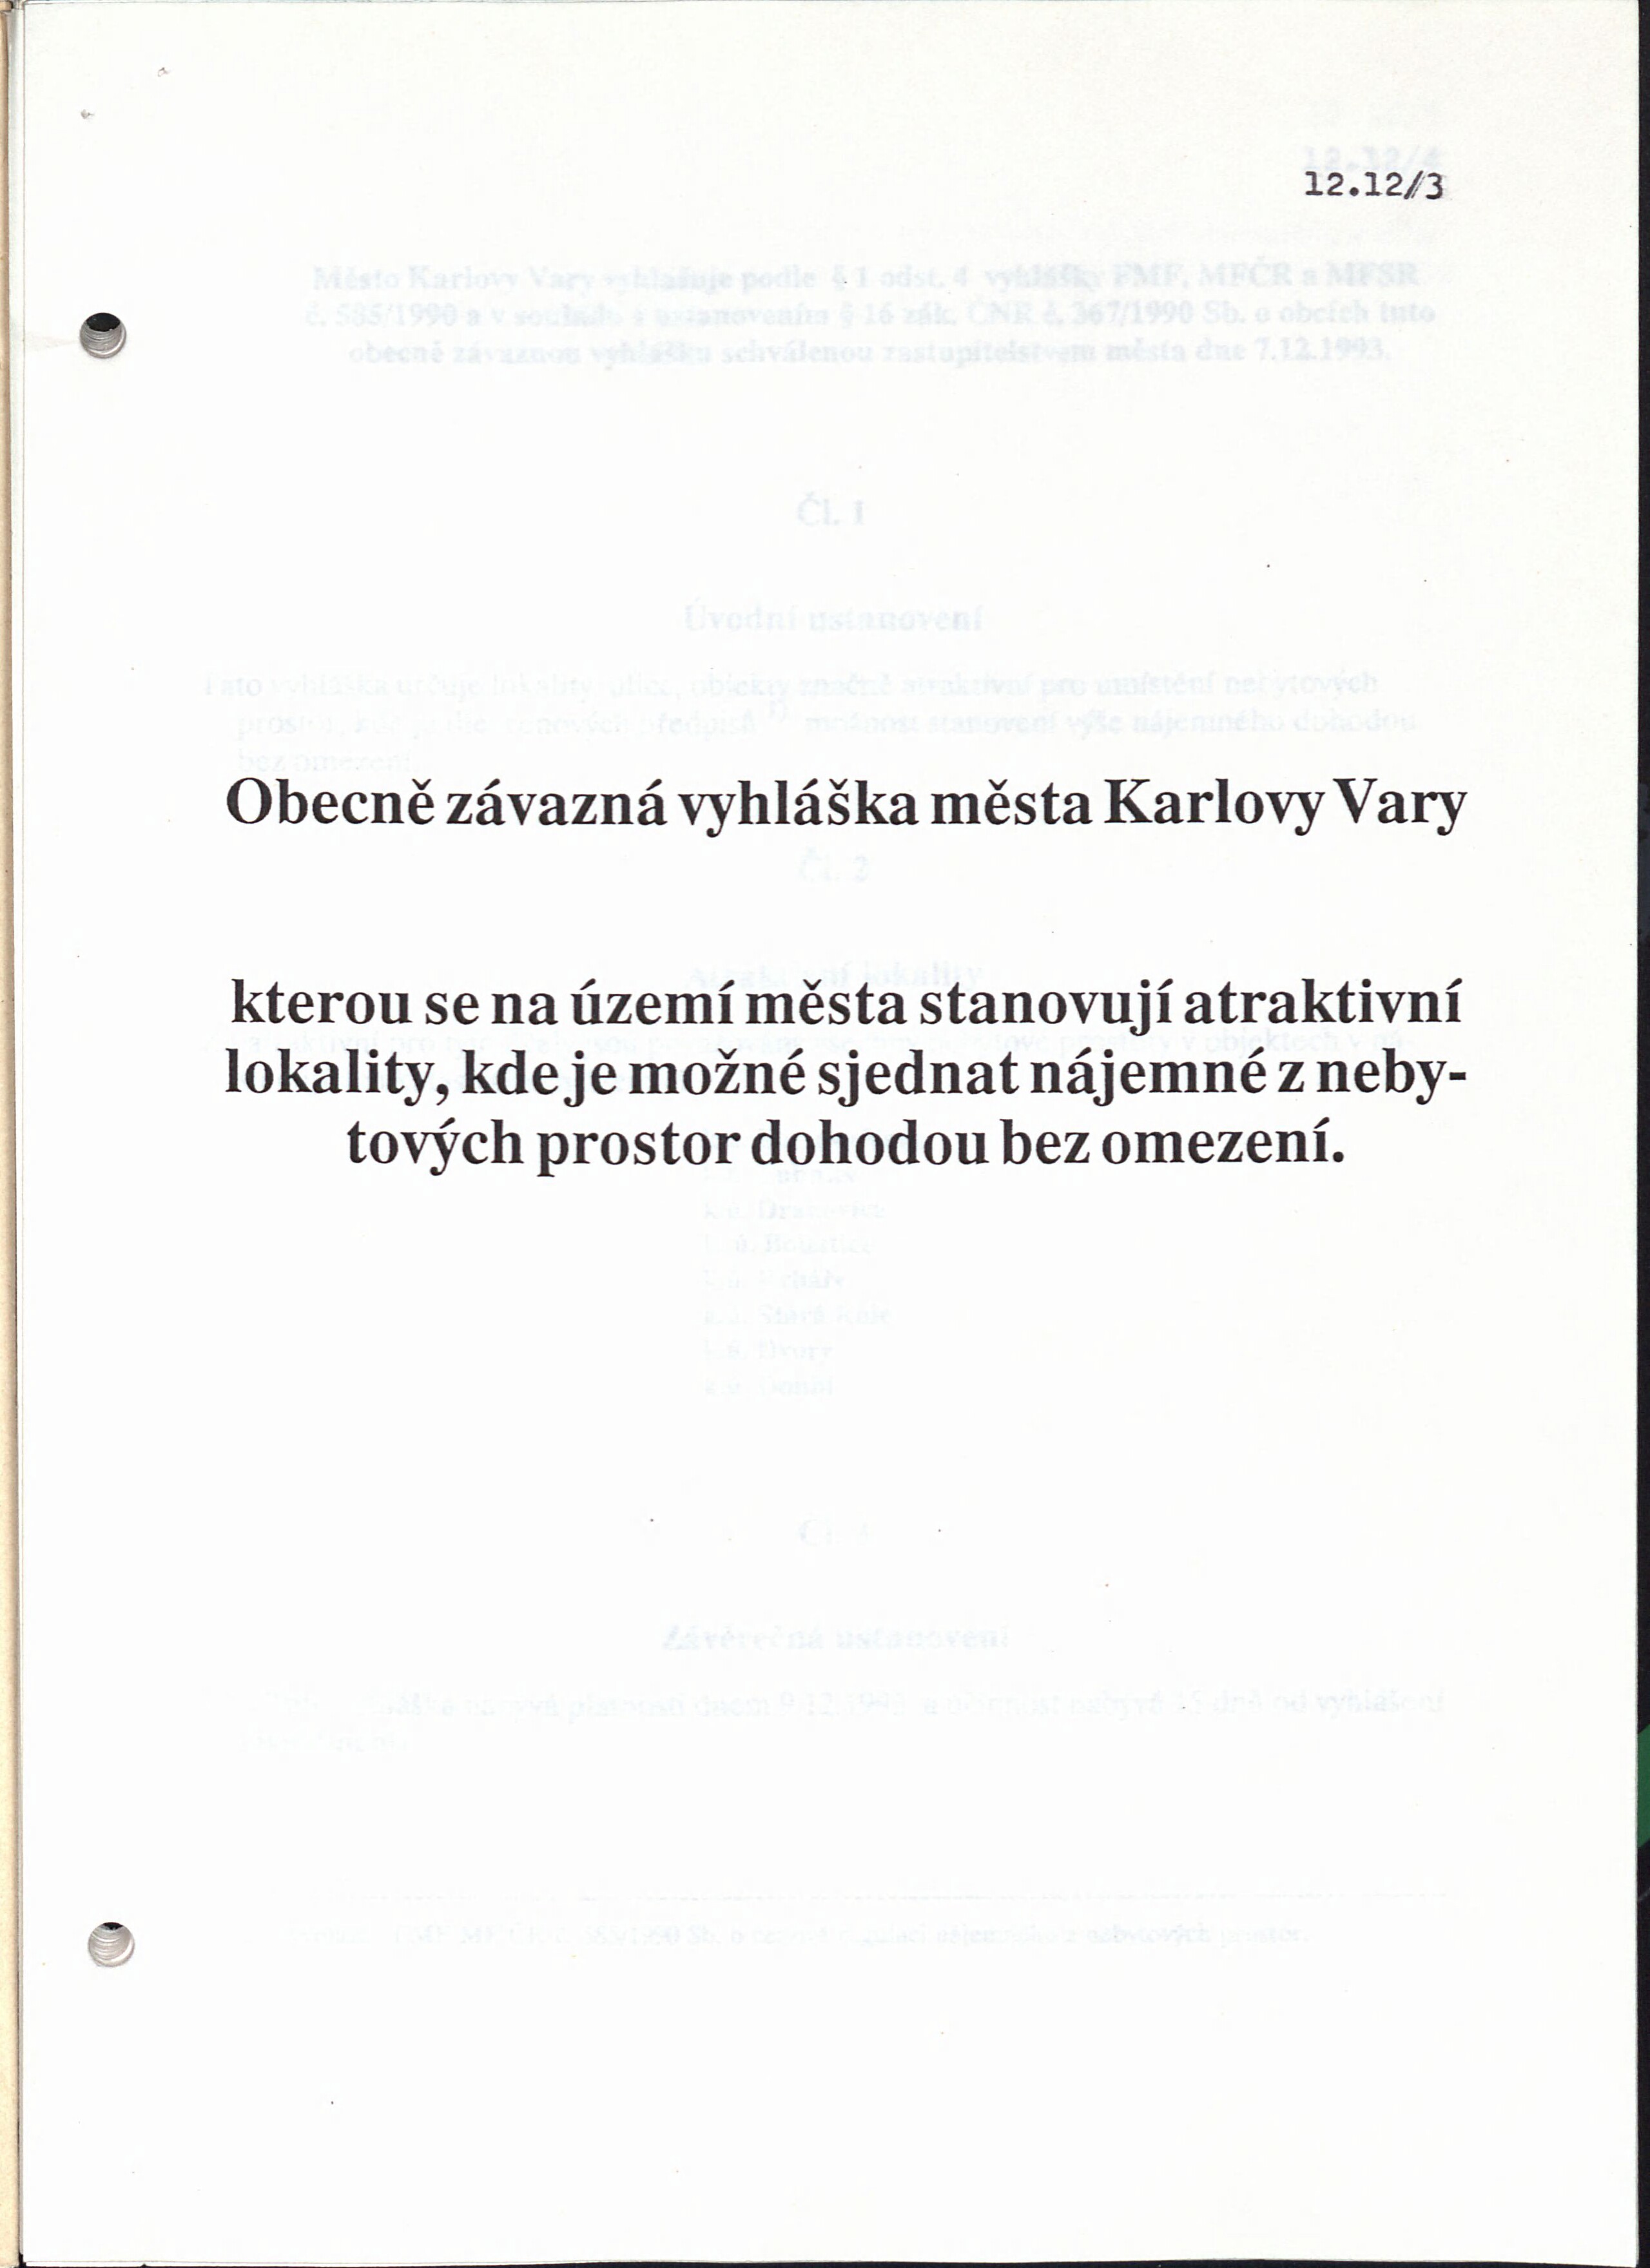 182. soap-kv_01494_mesto-karlovy-vary-1993-3_1820